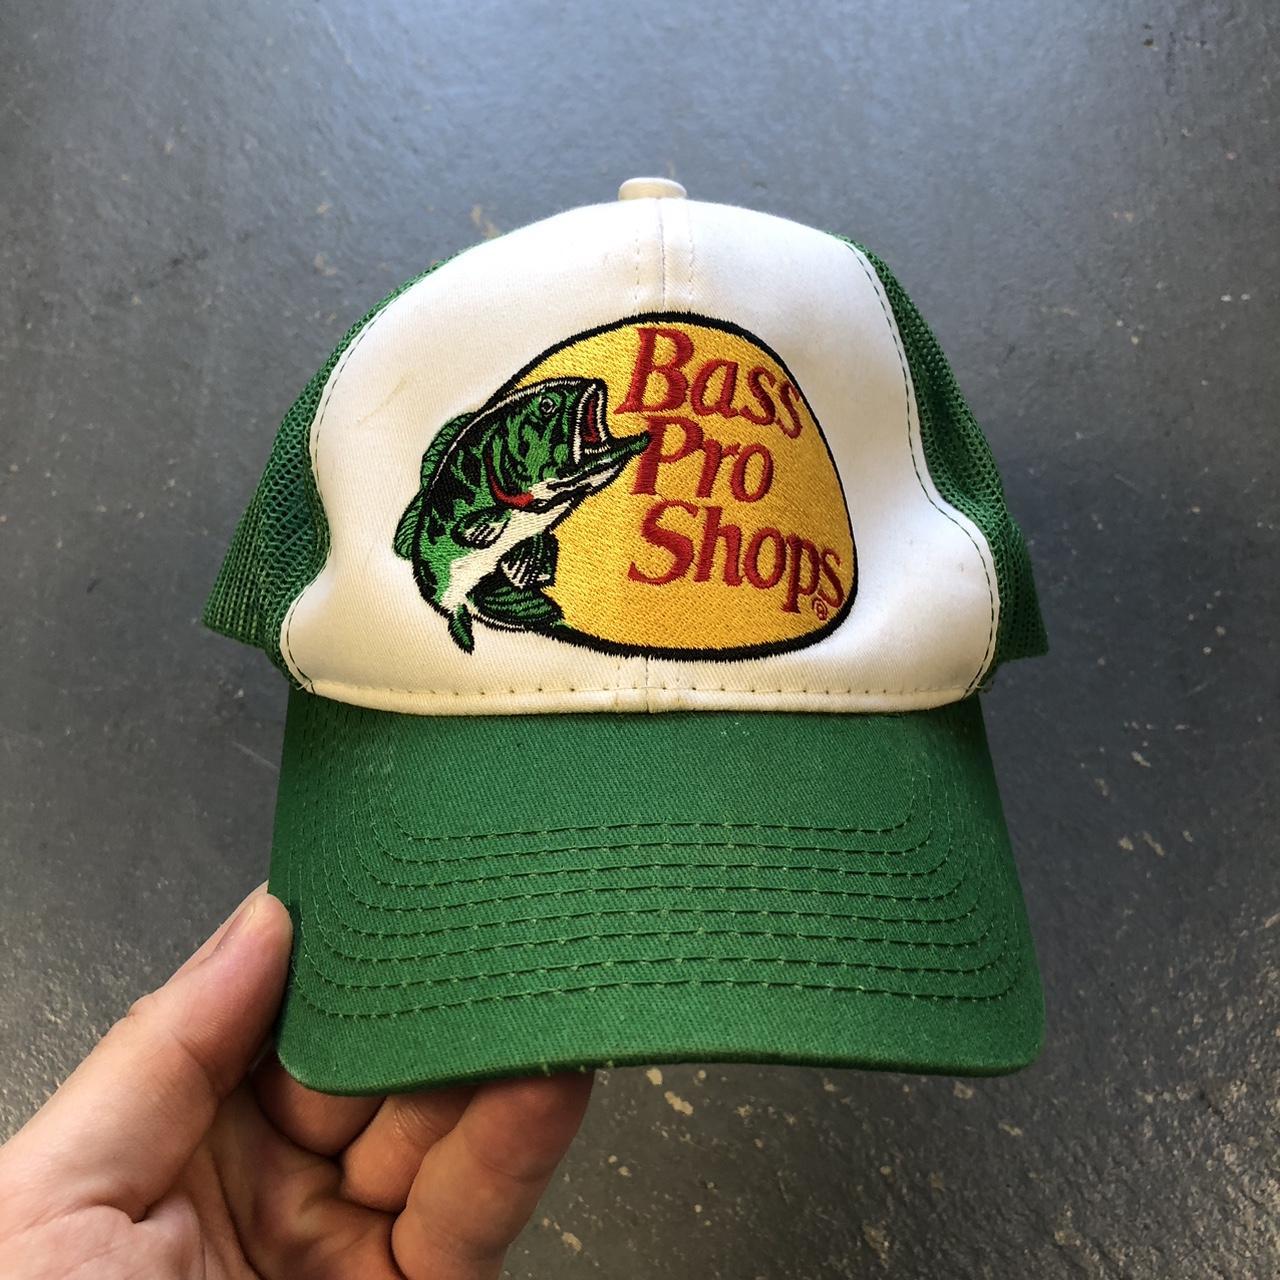 Bass Pro Shops Men's Hat - Green